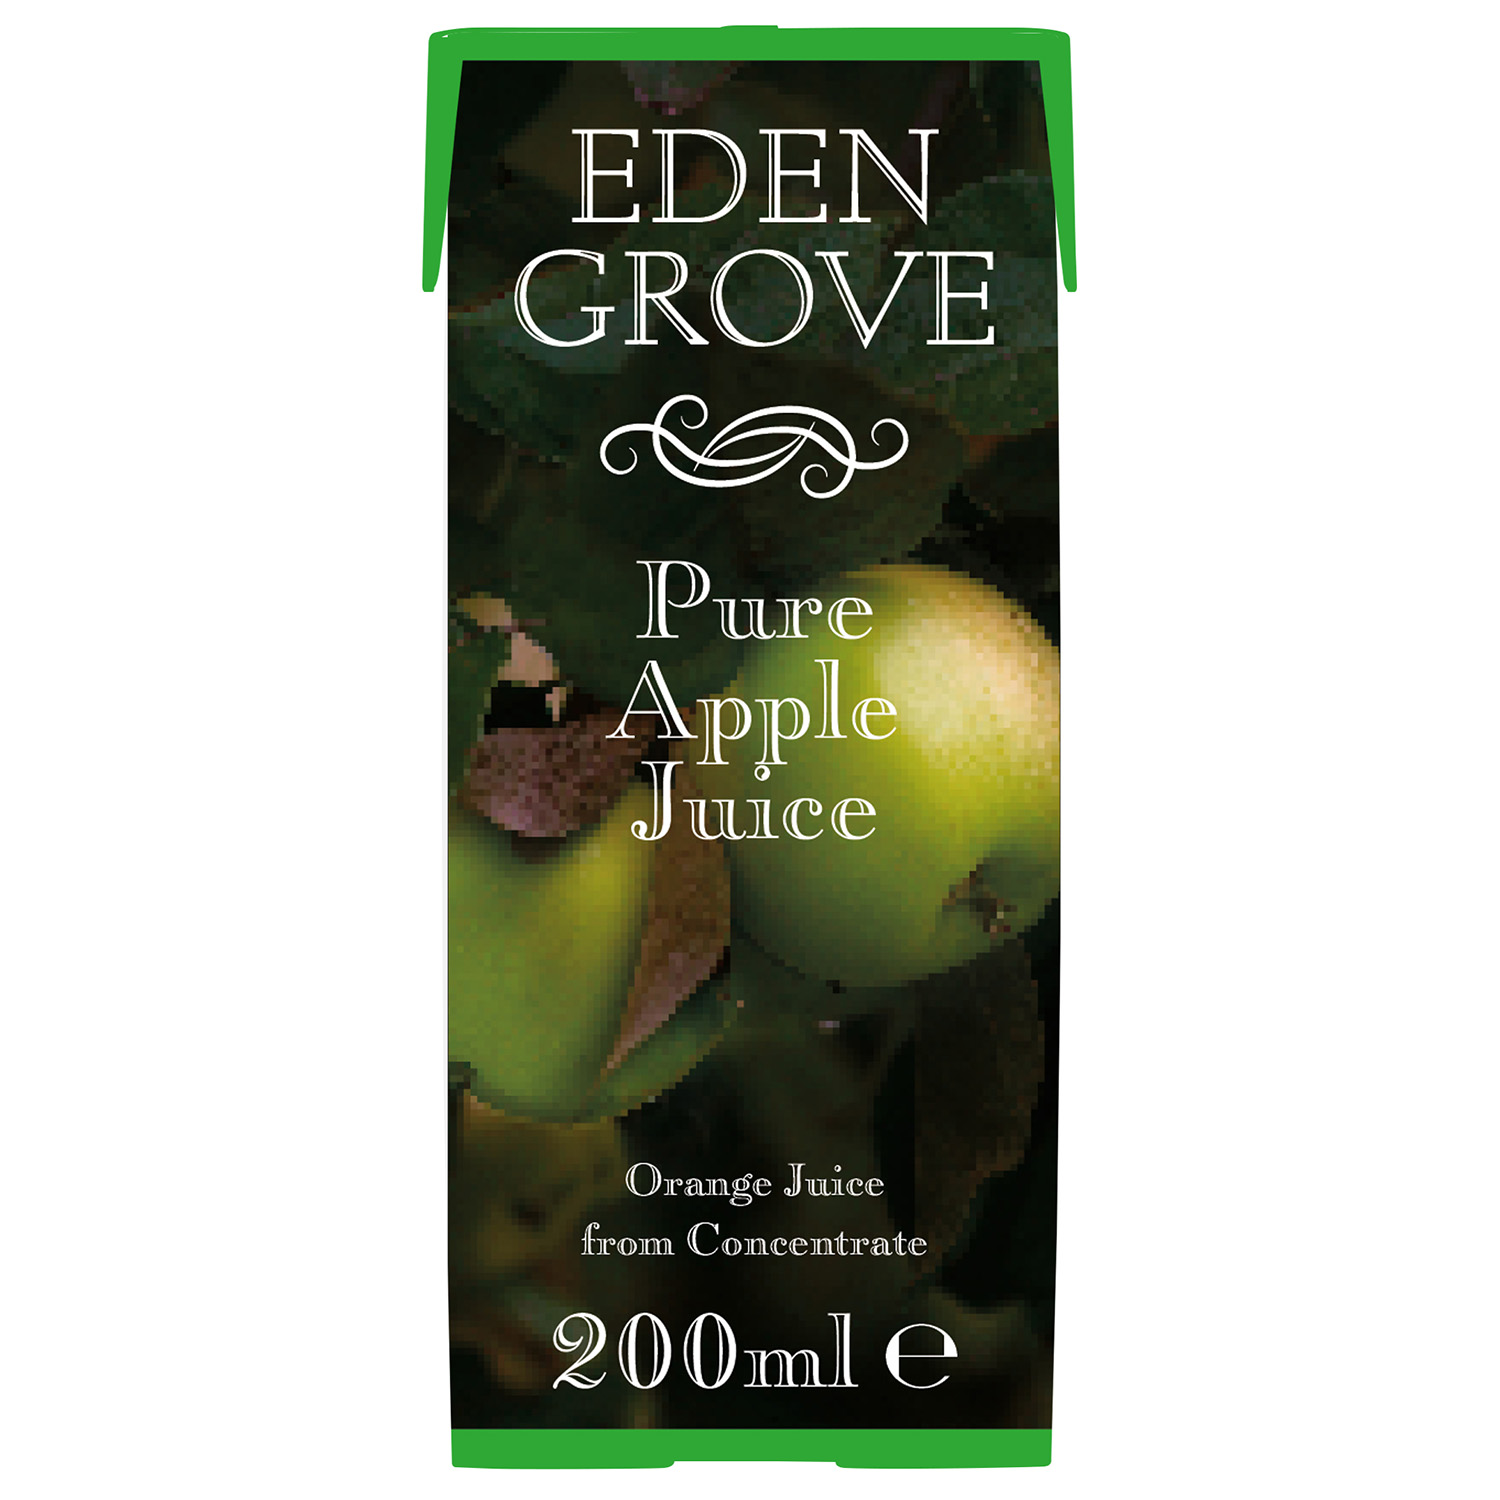 Eden Grove Pure Apple Juice 200ml